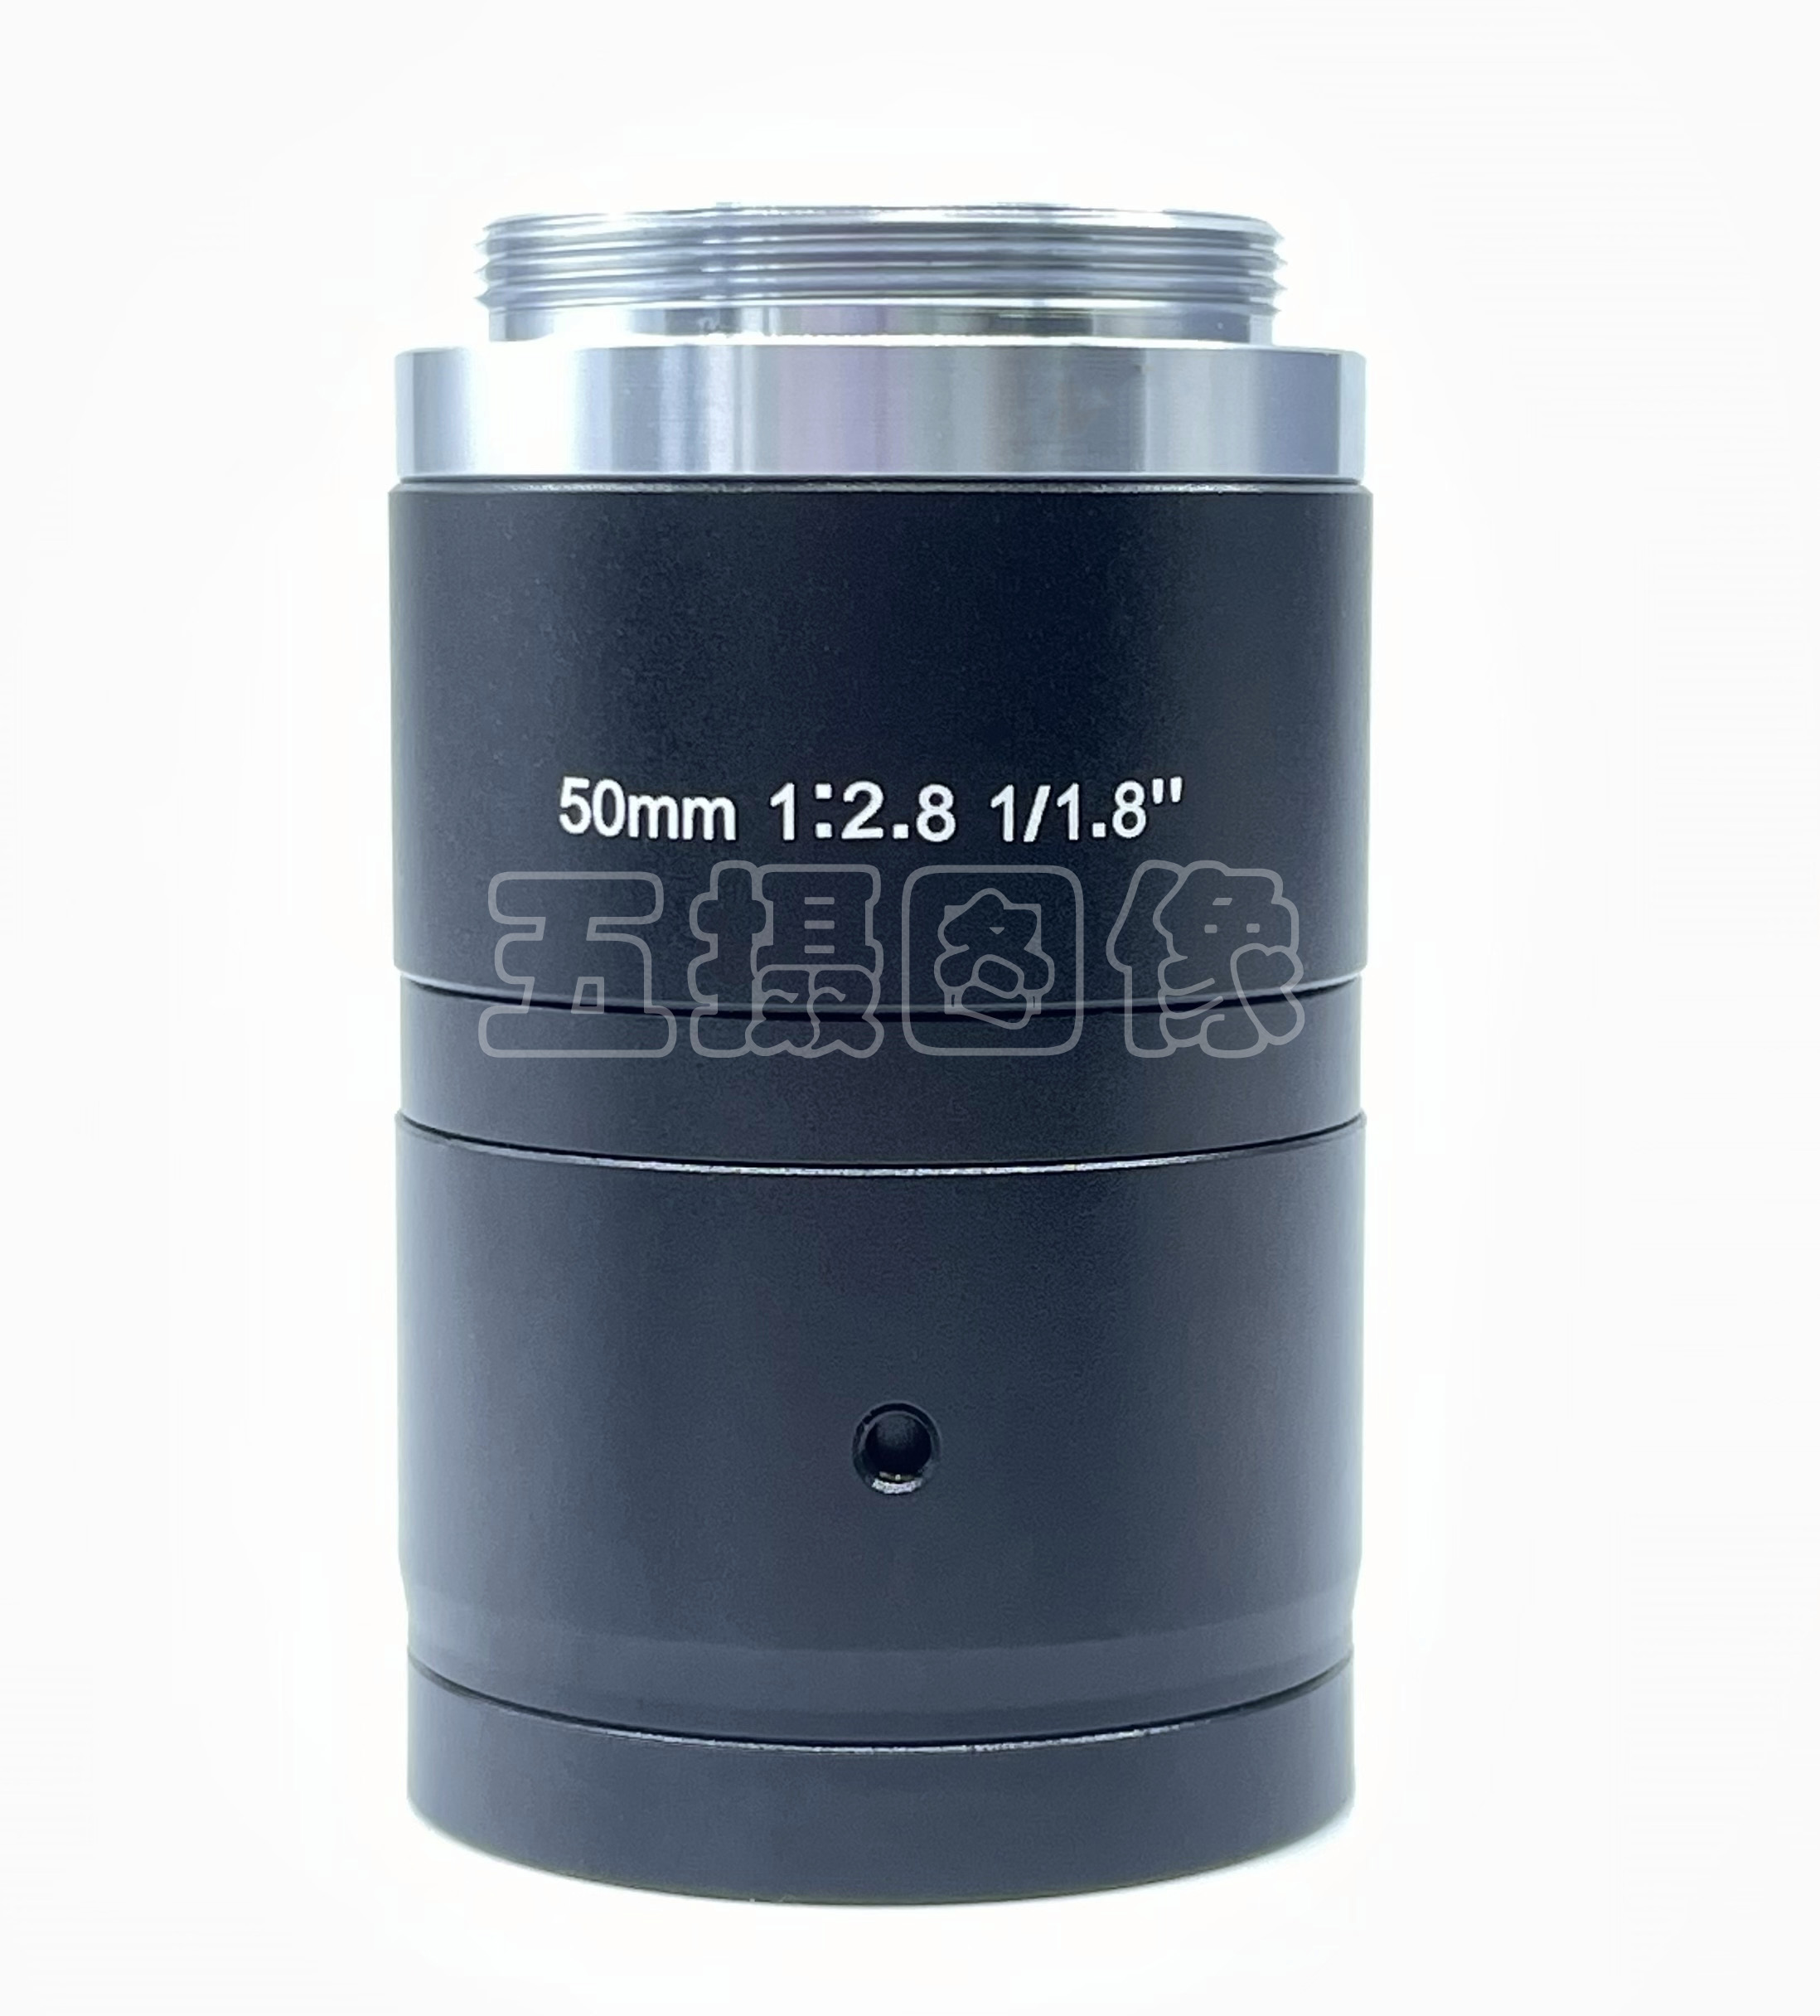 工业镜头 焦距 50mm 定焦 1/1.8“  500万高清 低畸变 机器视觉